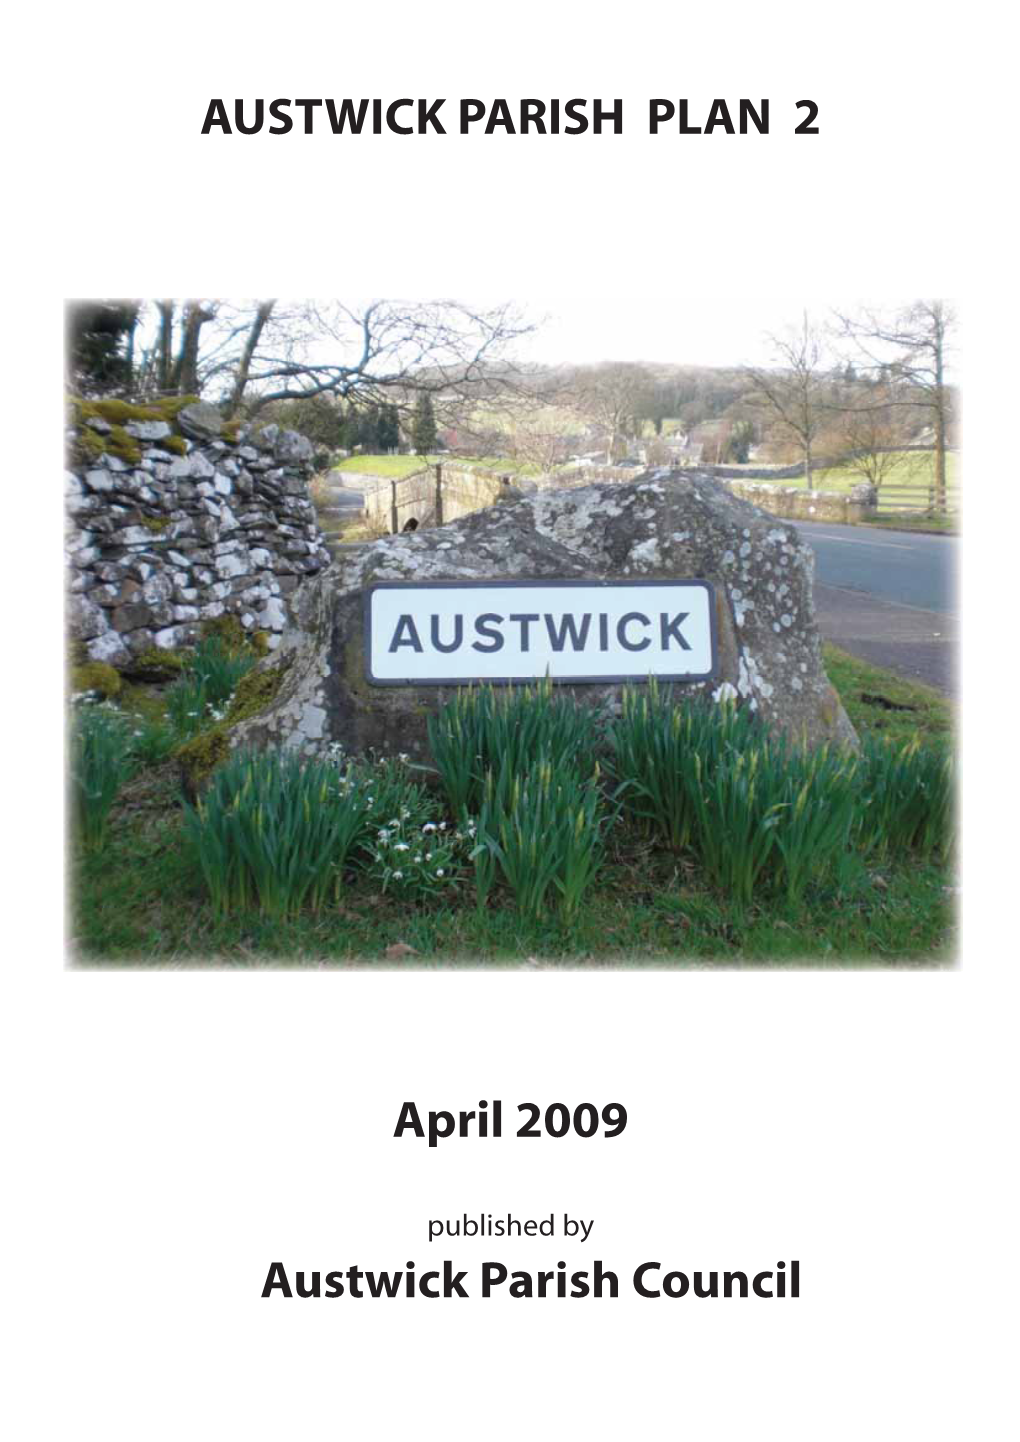 AUSTWICK PARISH PLAN 2 April 2009 Austwick Parish Council